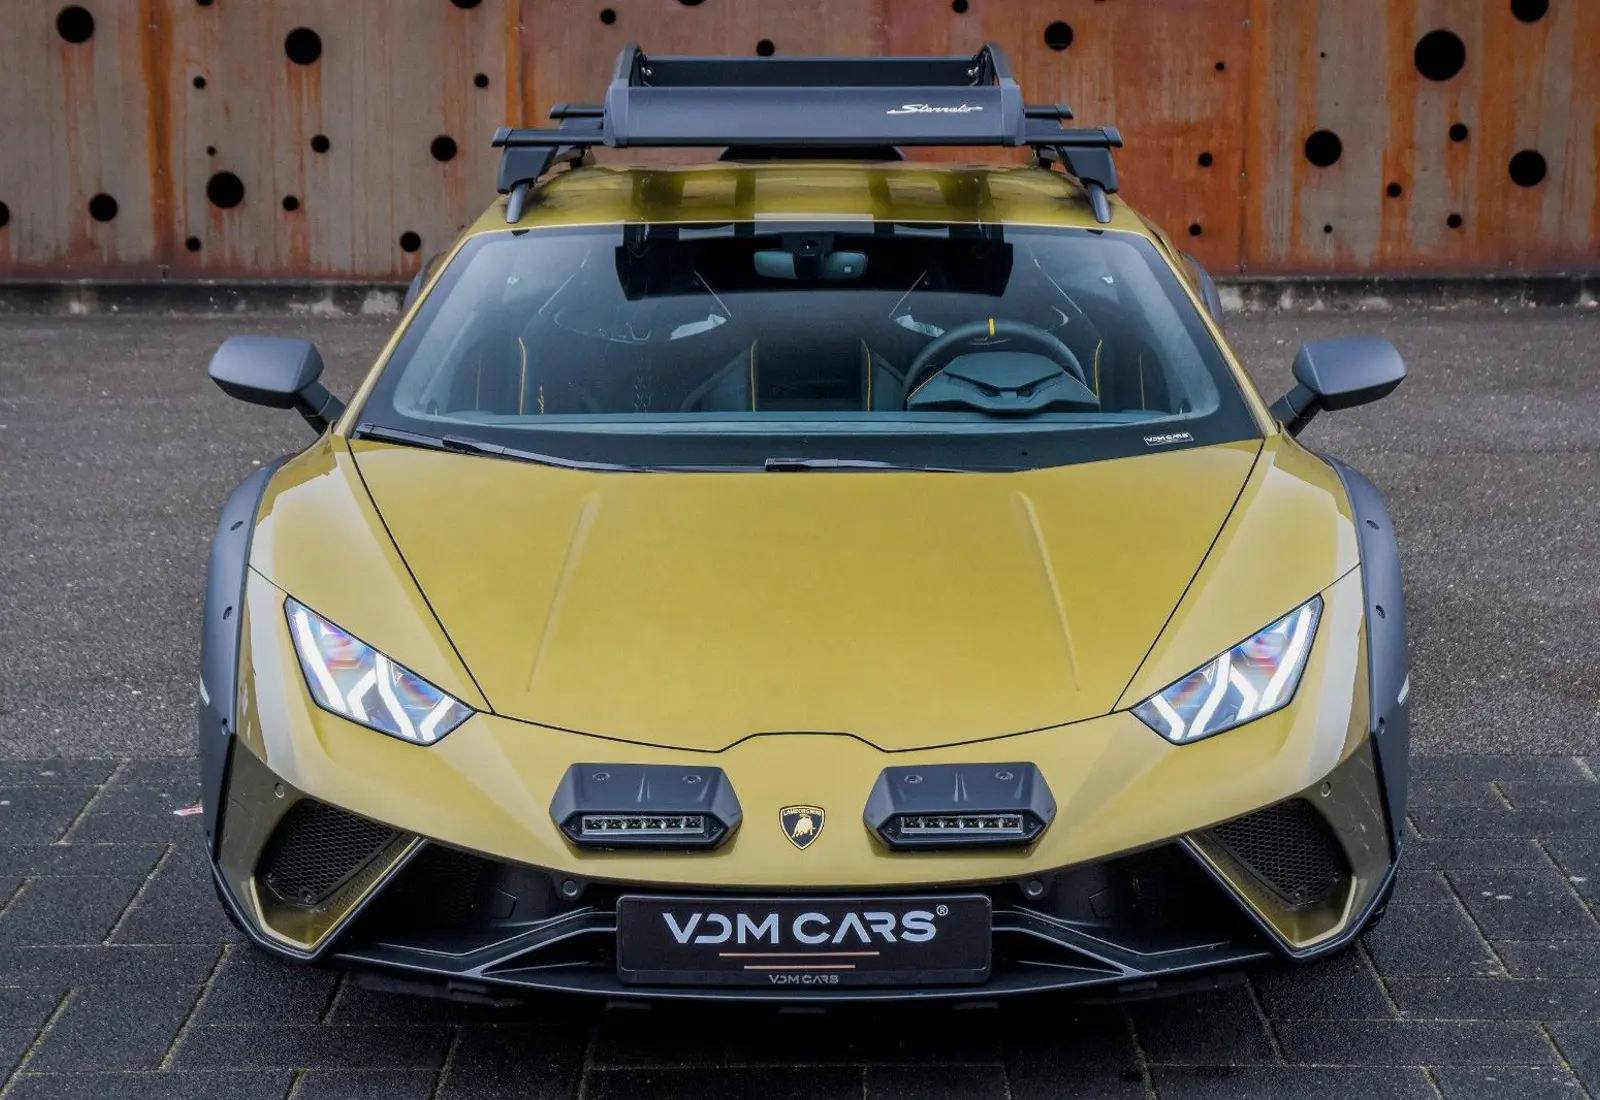 Lamborghini Huracán Sterrato * 1/1499 * CARBON SEATS * ROOF RACK *  - 49508